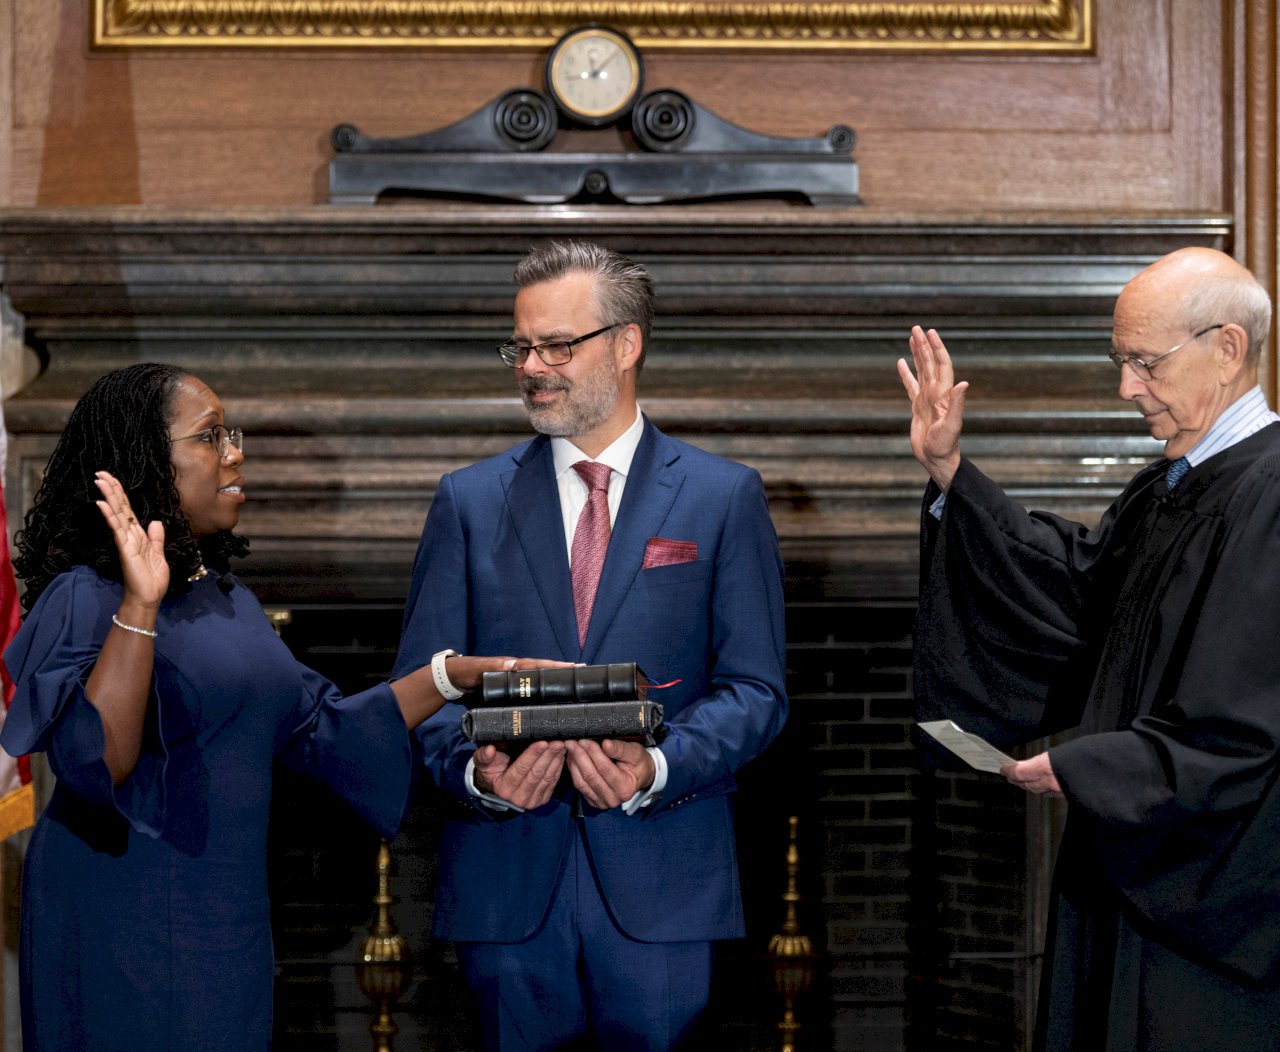 美首位非裔女大法官就職 打破最高法院白人男性優勢